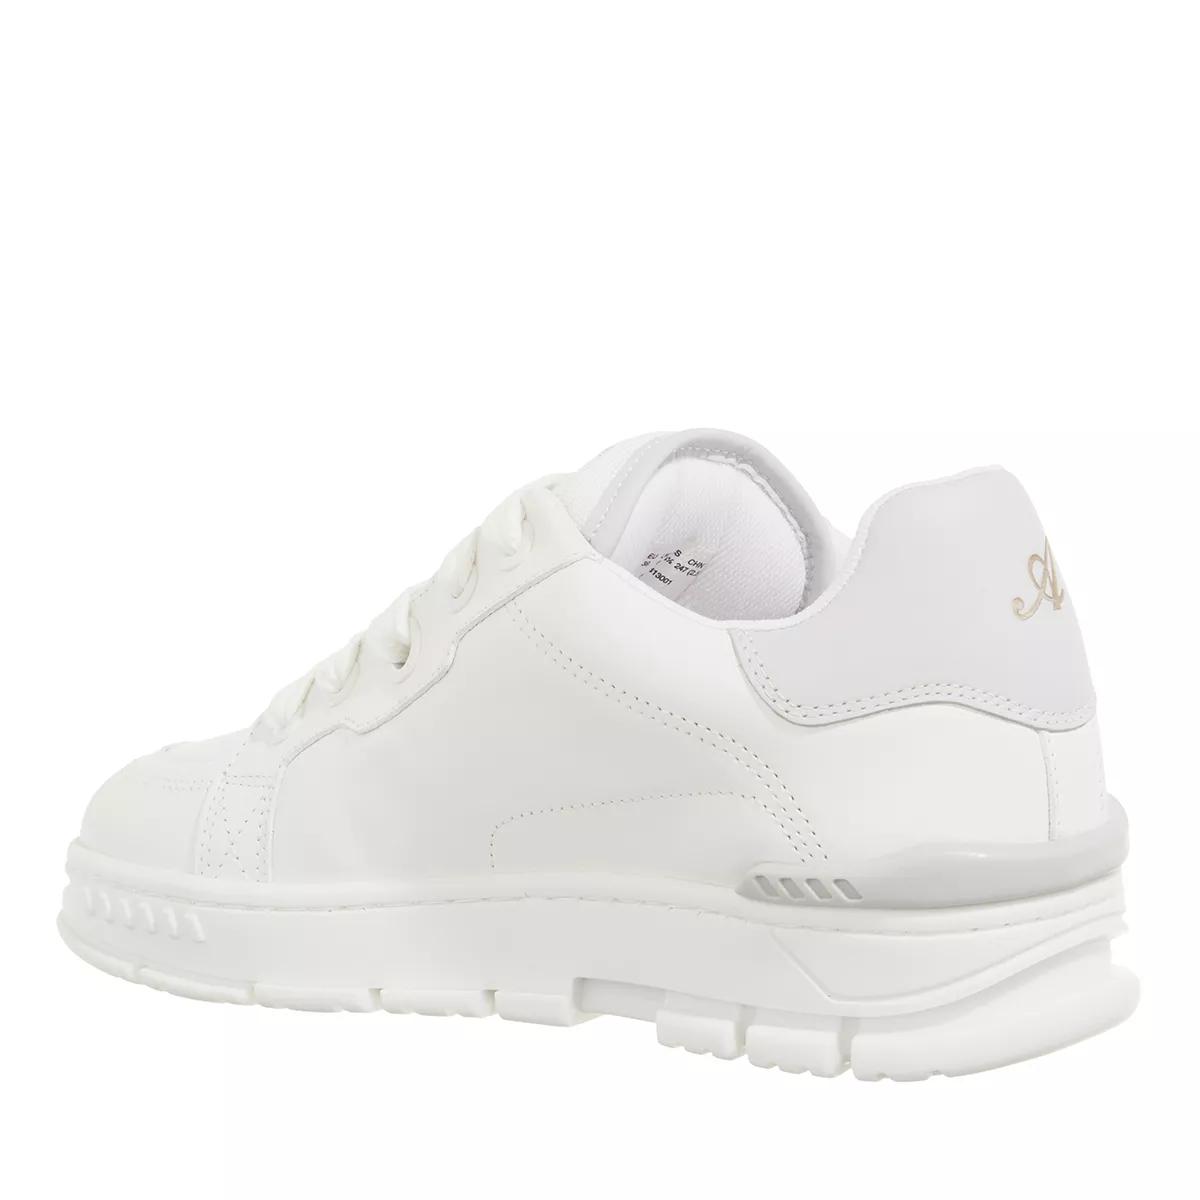 Area Haze Sneaker White/Light Grey Low-Top Sneaker